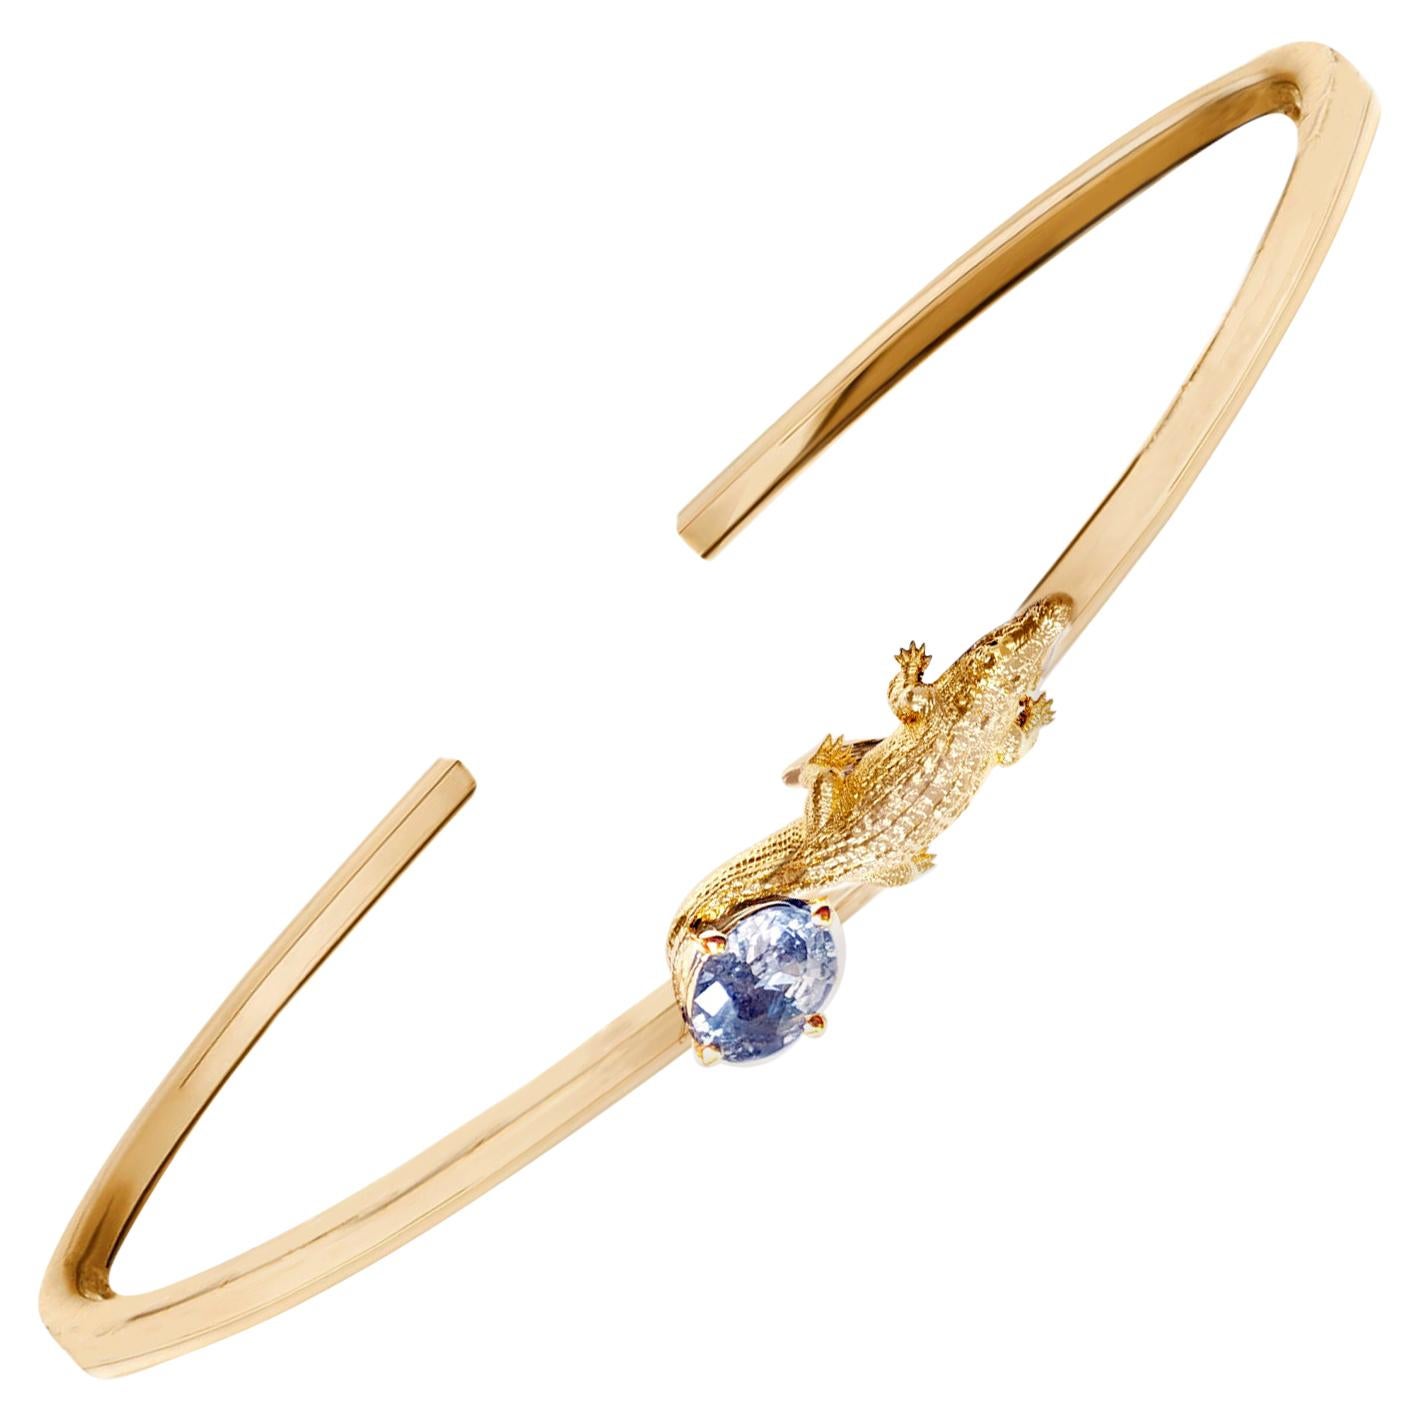 Eighteen Karat Yellow Gold Mesopotamian Bracelet with Light Blue Sapphire